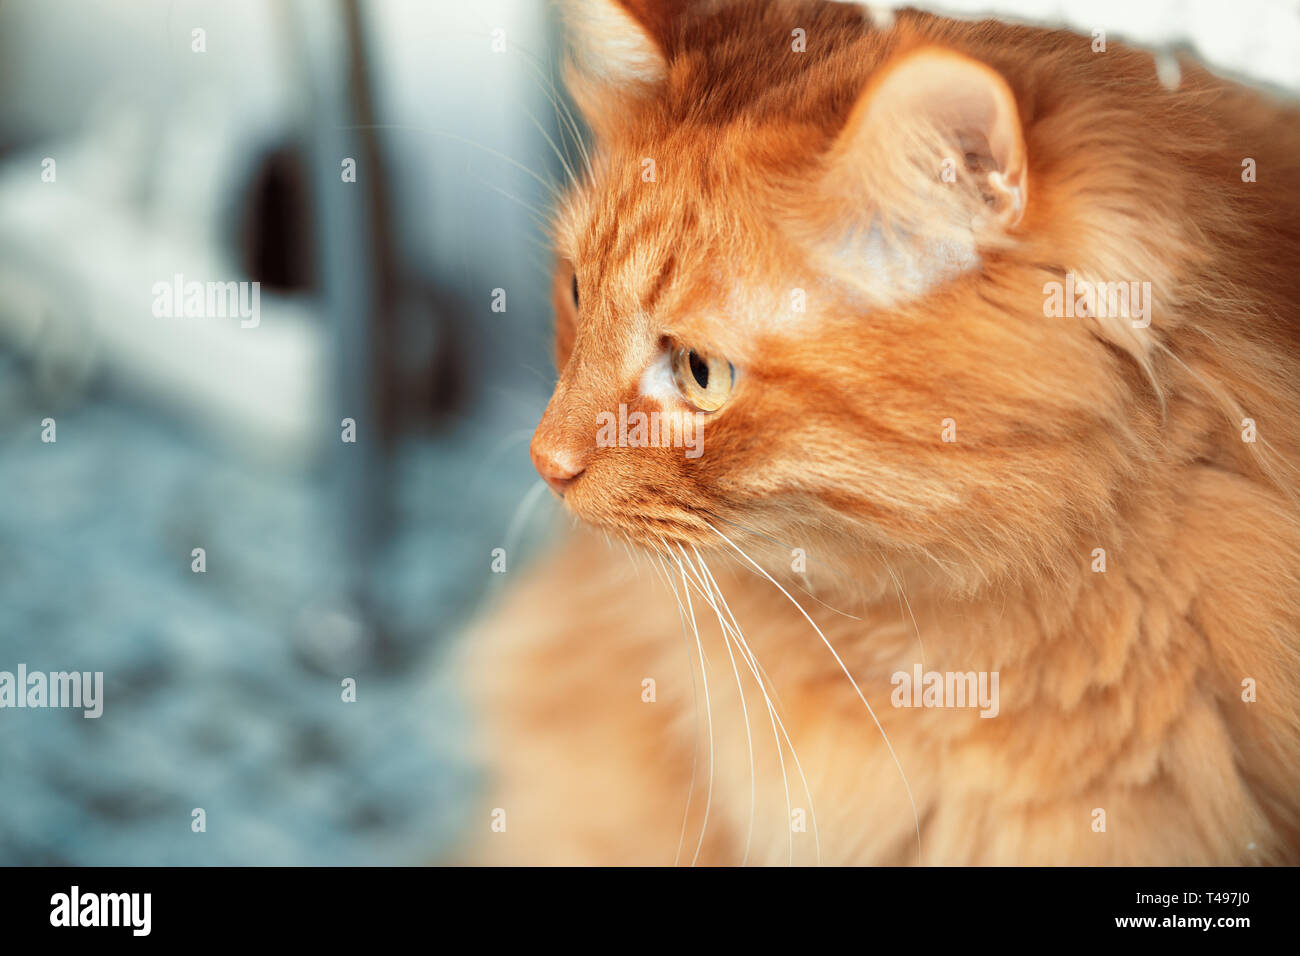 Ritratto di un soffice gatto rosso su uno sfondo sfocato. Museruola sul lato destro del telaio, il gatto ha girato intorno e guarda in lontananza. Chiudere- Foto Stock